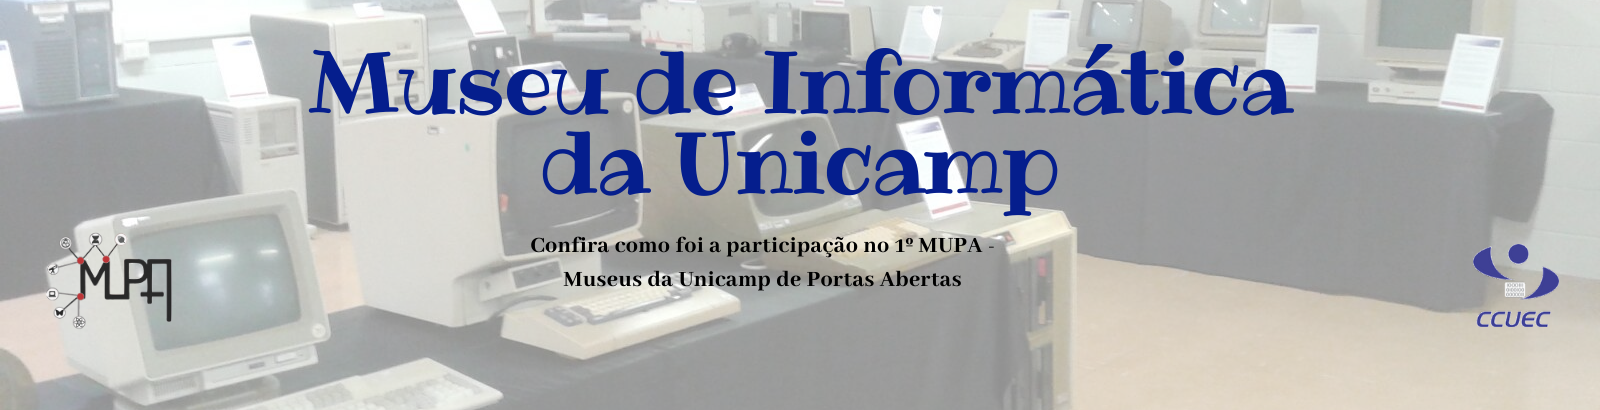 CCUEC participou do 1º MUPA - Museus da Unicamp de Portas Abertas